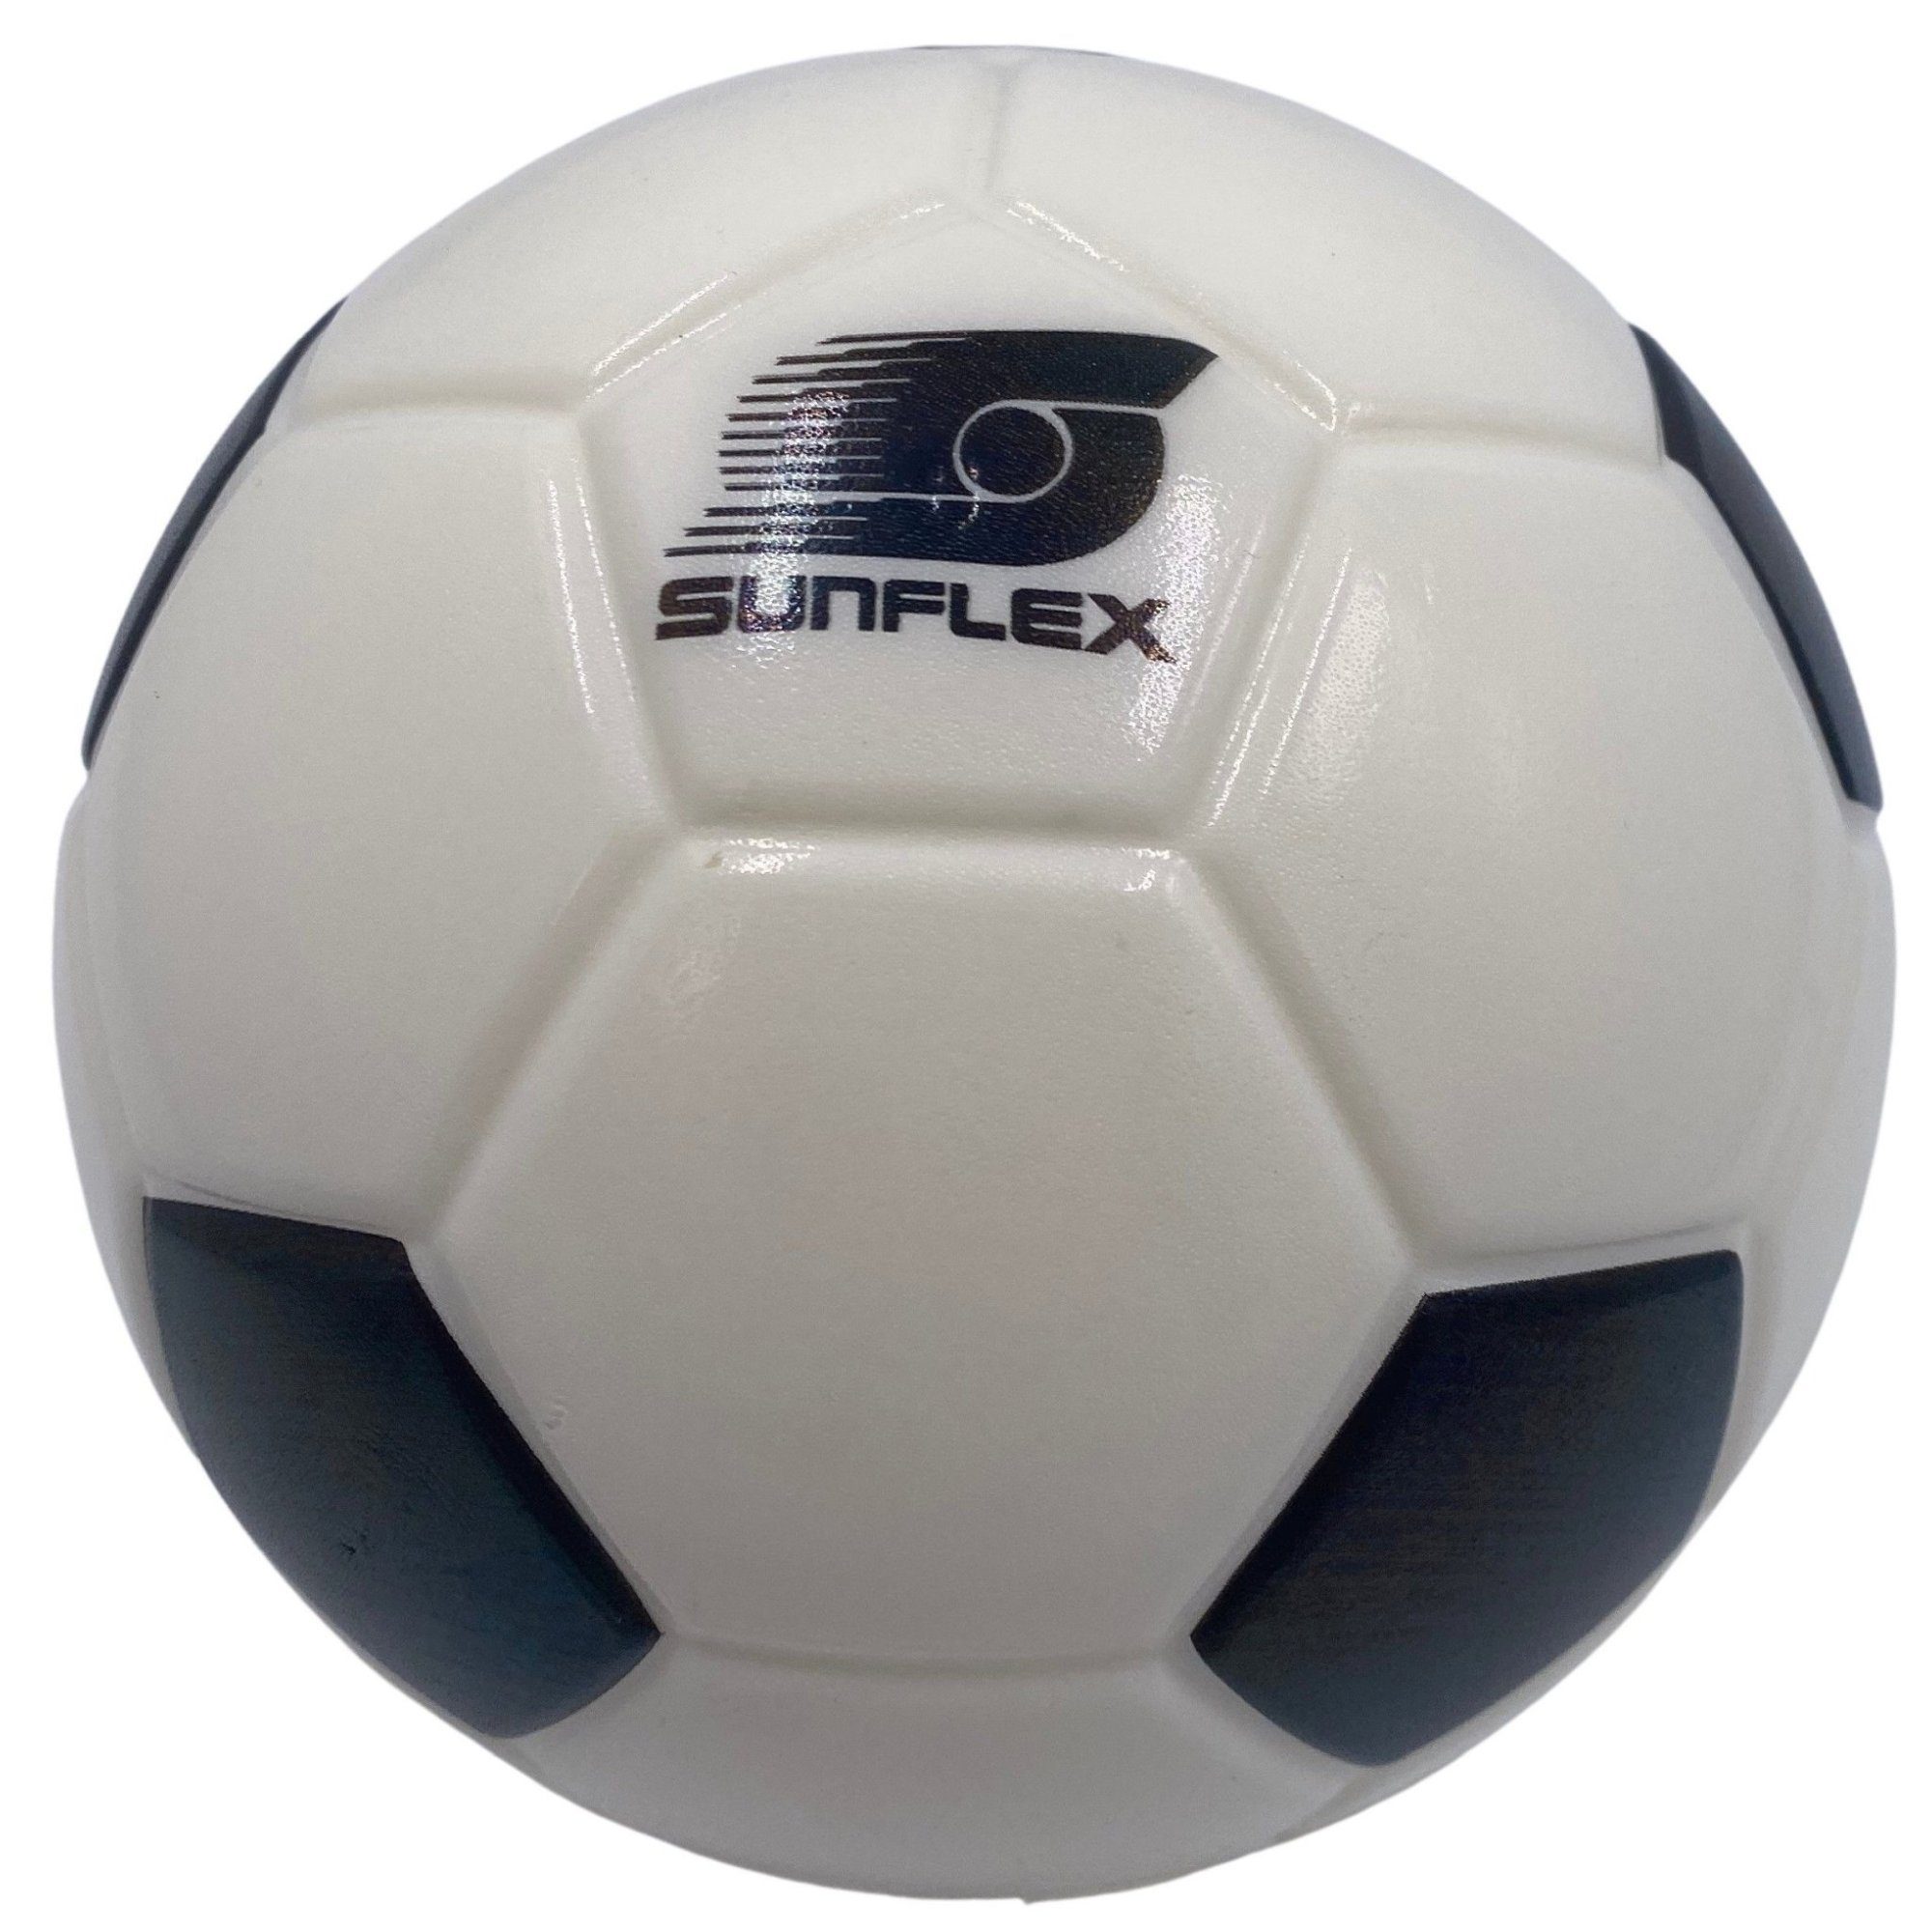 Sunflex Fußball sunflex Softball Fußball